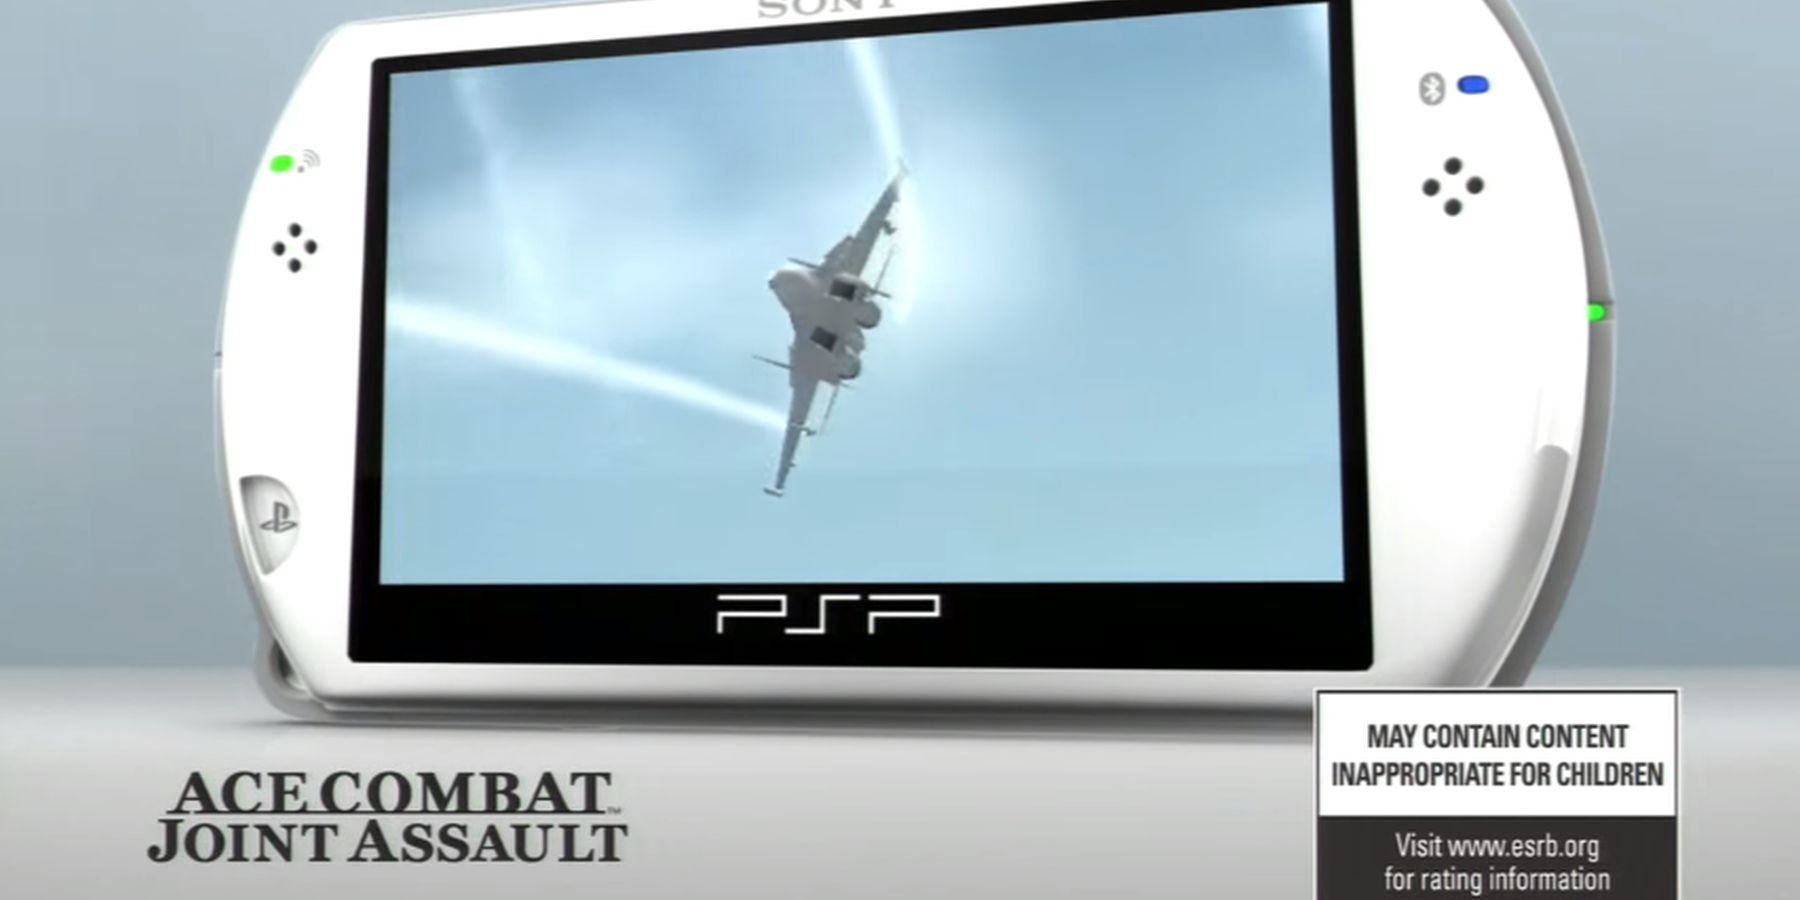 PlayStation-ის ფანი აზიარებს წარმოუდგენელ კონცეფციას ახალი PSP-ისთვის